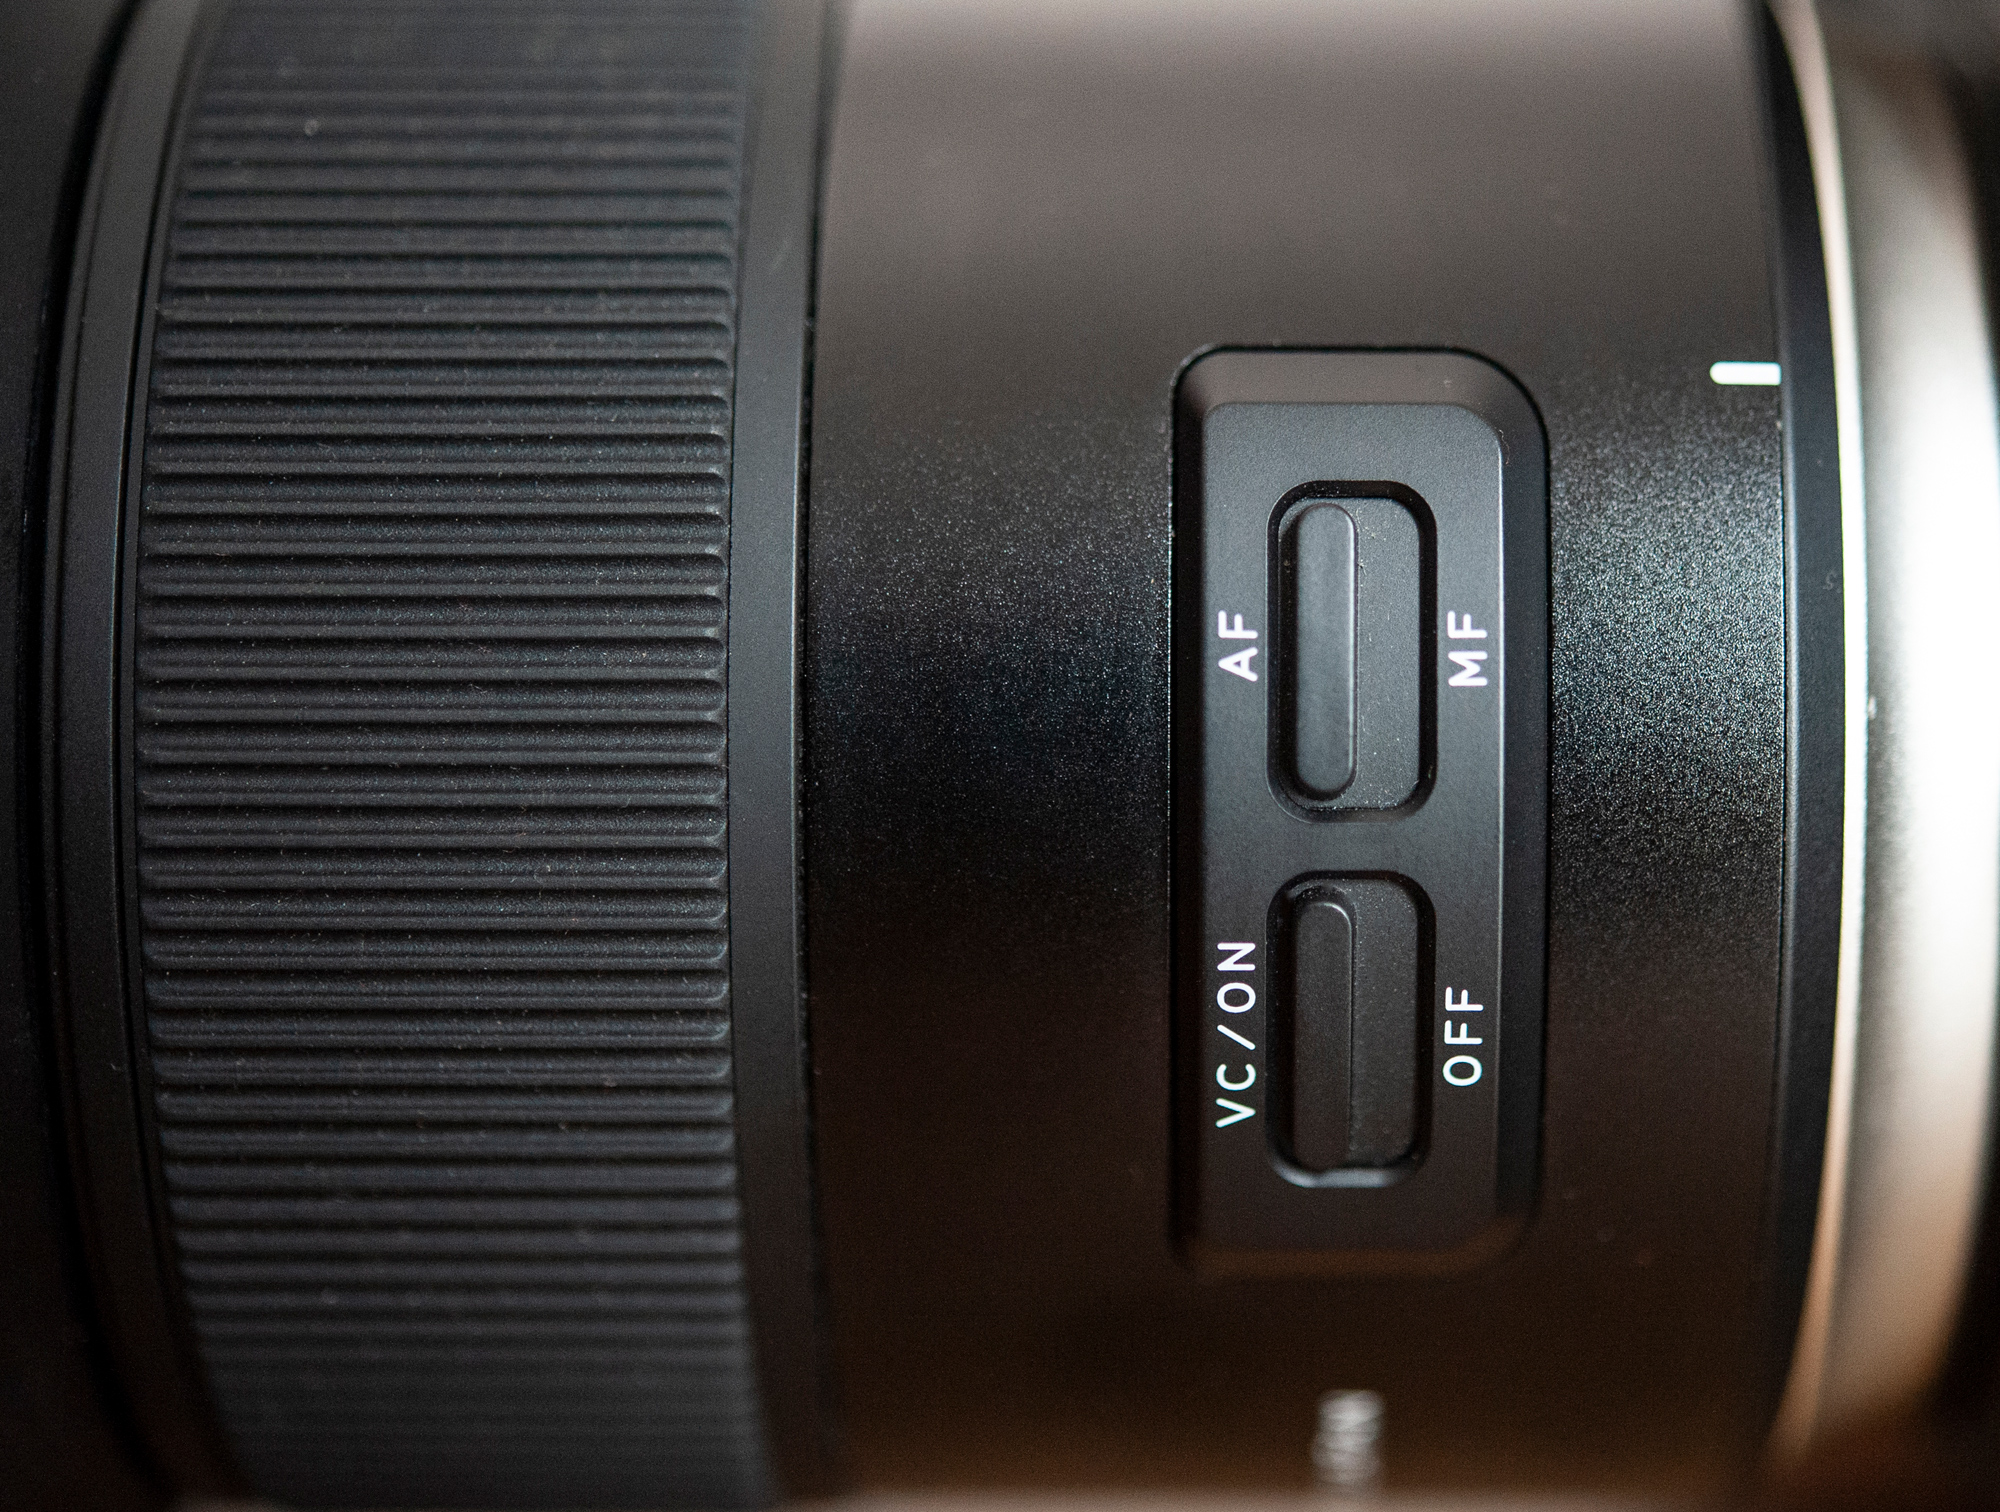 Ekstremalnie ostry, a zarazem miękki Tamron SP 45mm F1.8 Di VC USD w asyście Canon EOS 5D Mark IV - zdjęcia przykładowe